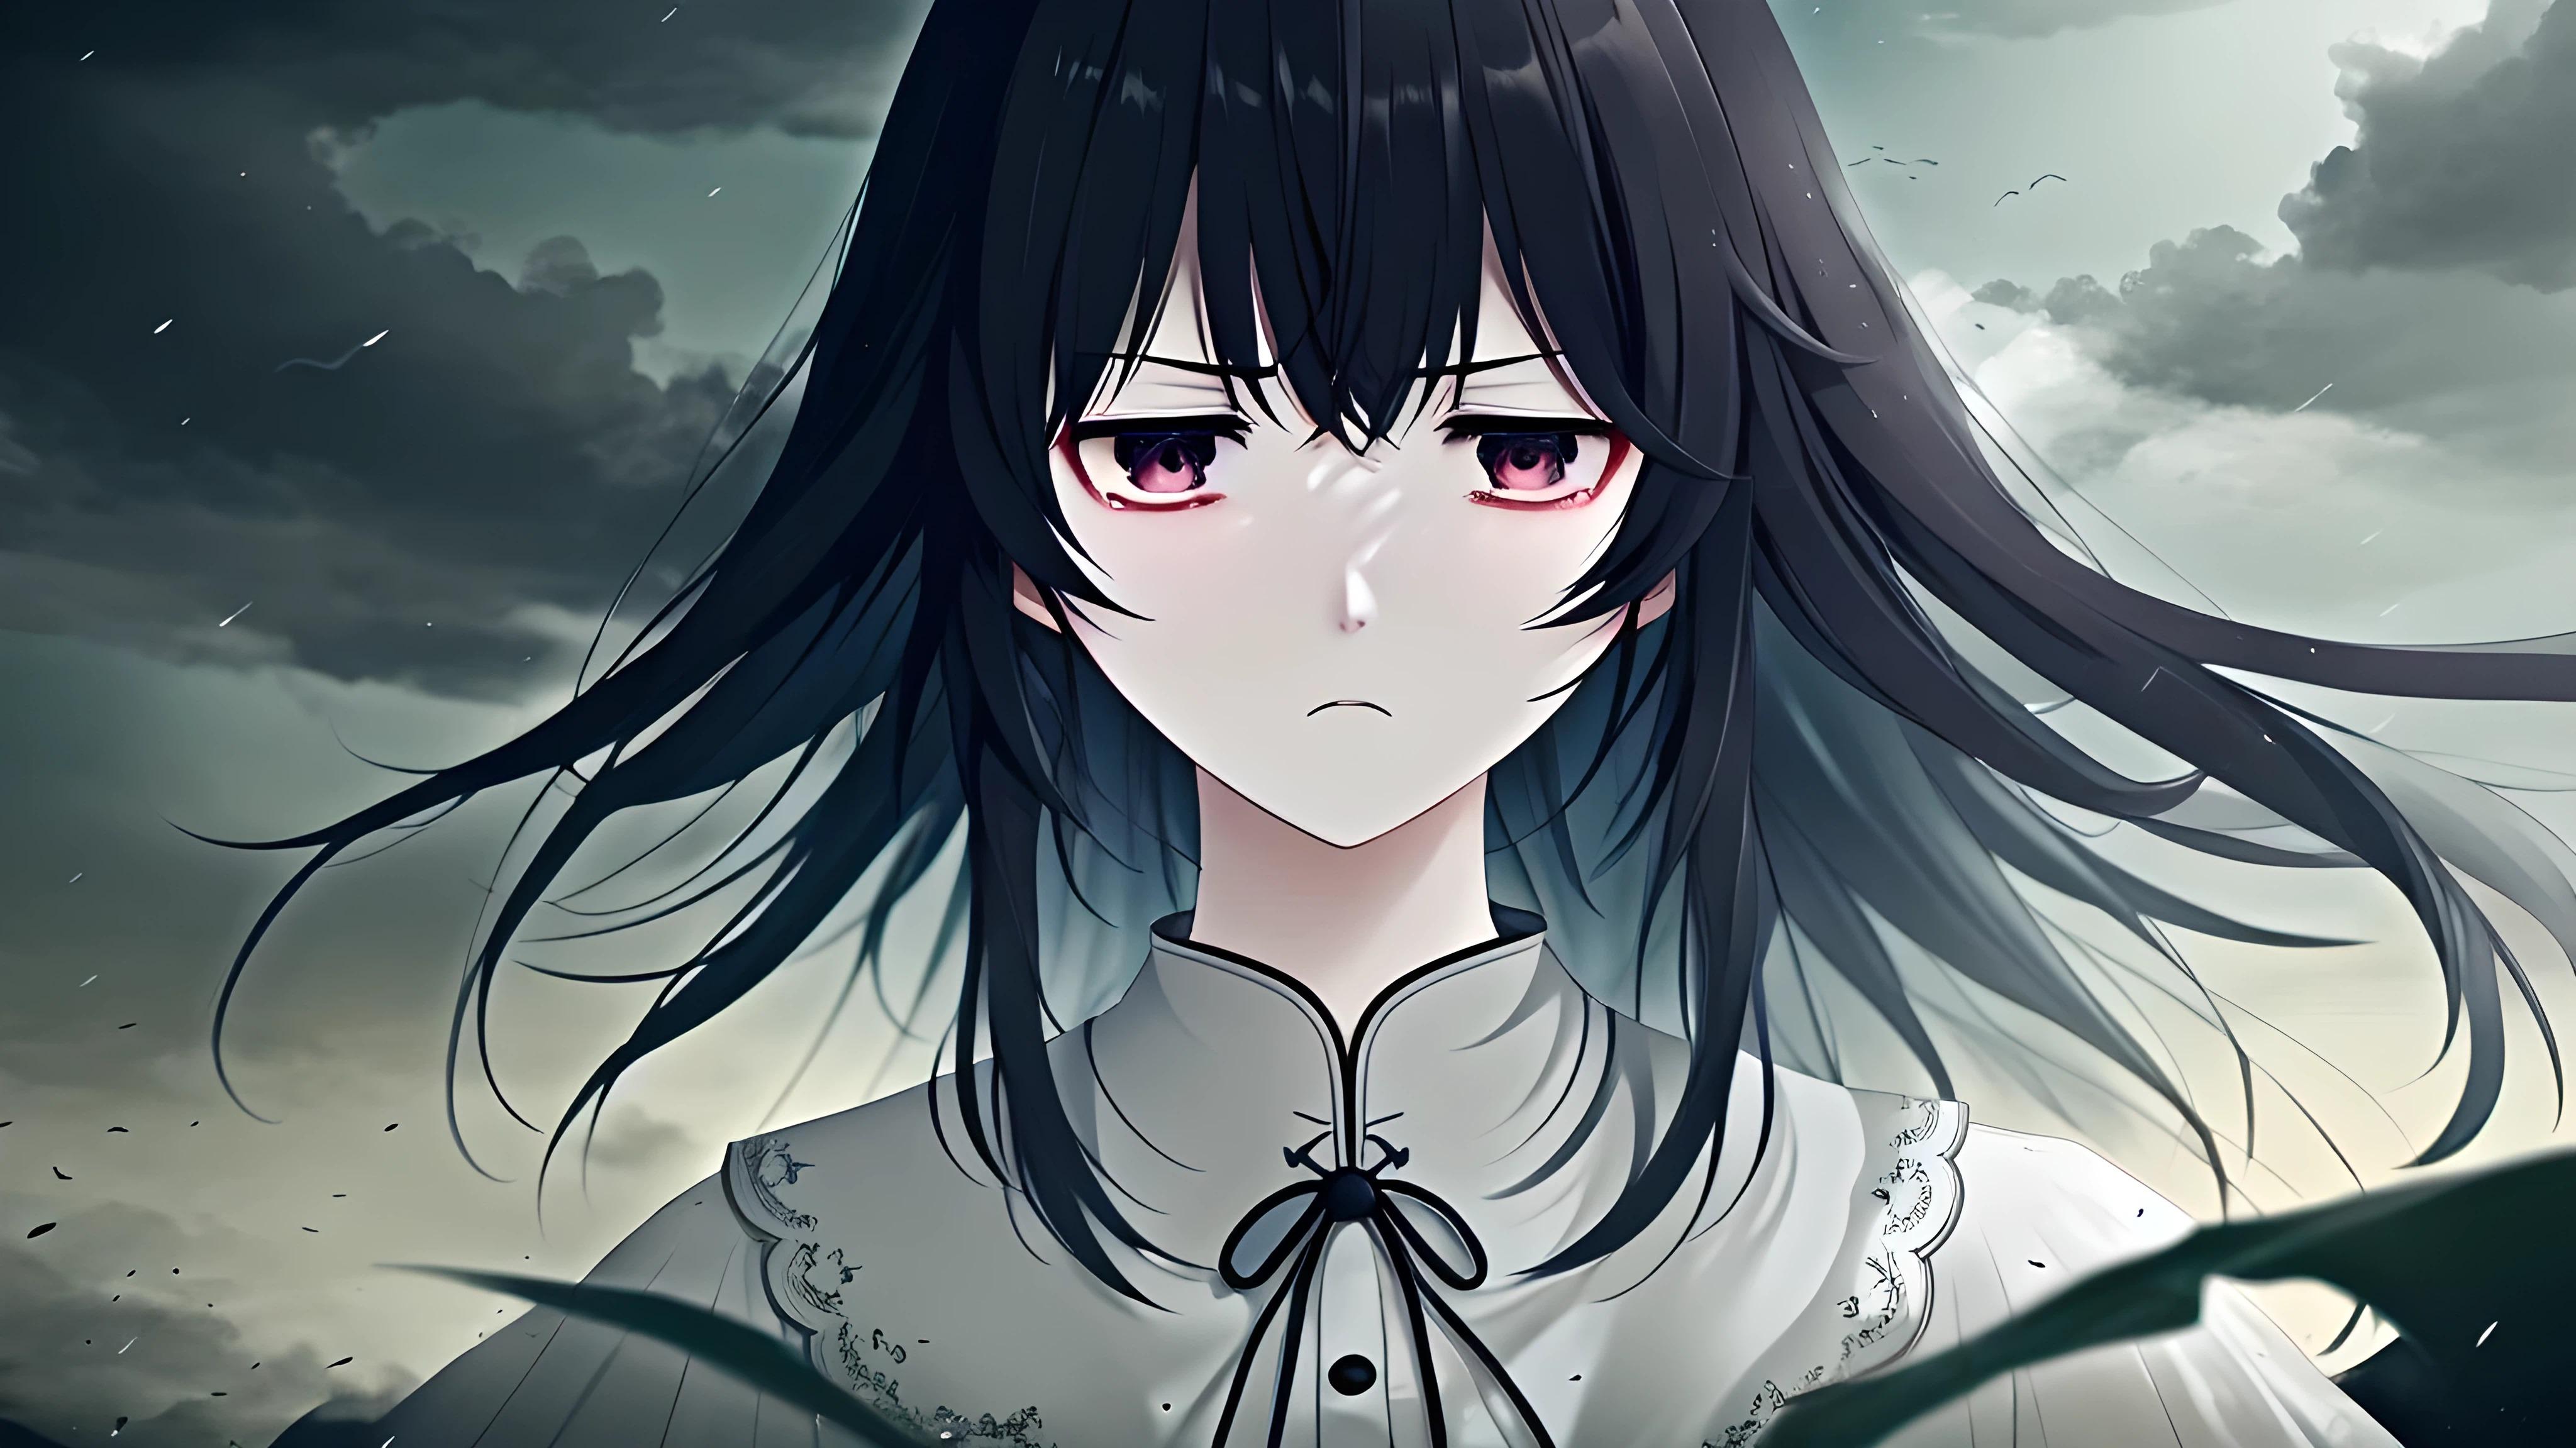 Sad And Angry Anime Girl 4K Anime Girl 4K by Subaru sama